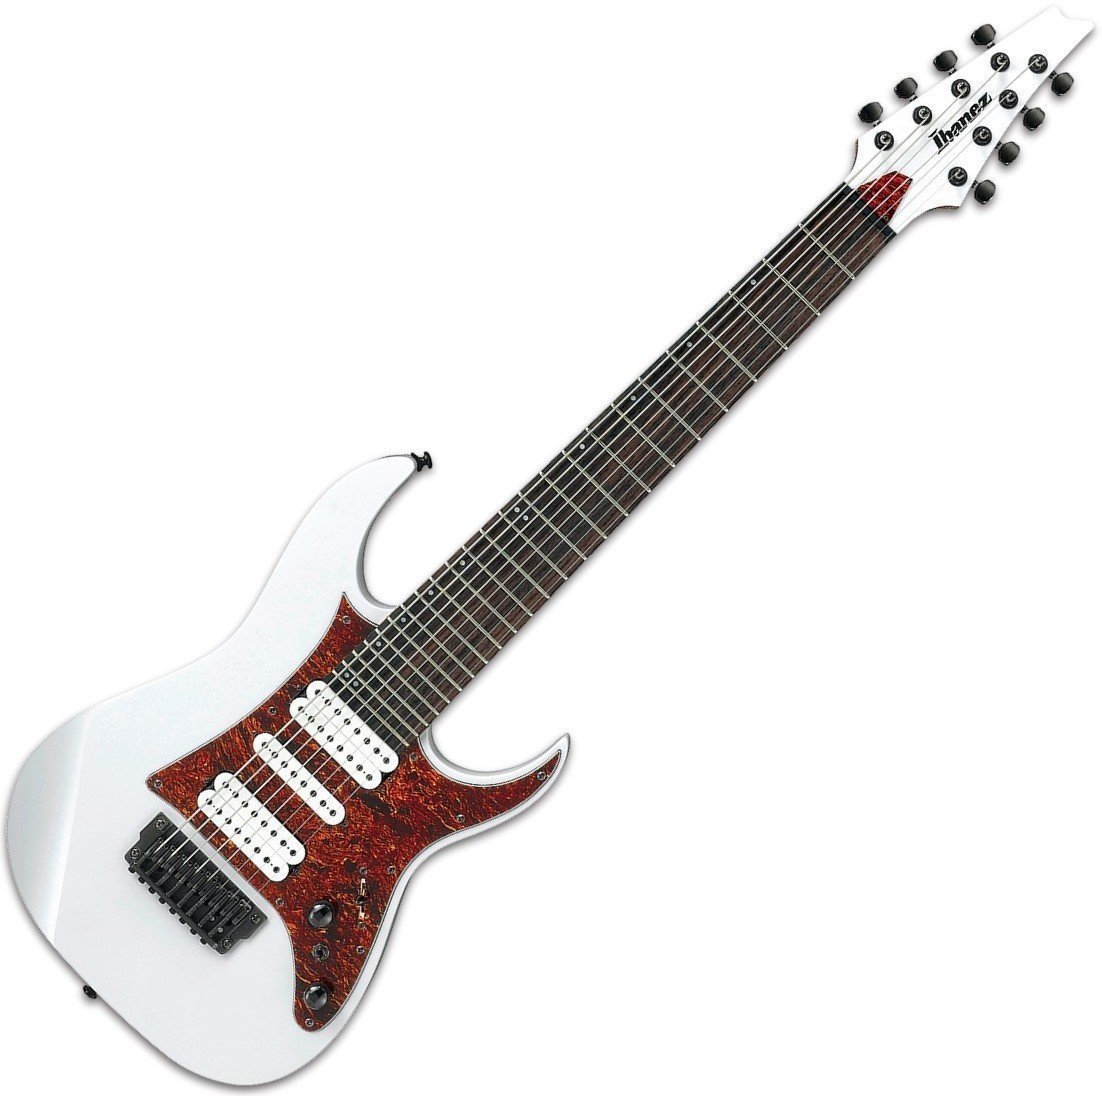 Signatur elektrisk guitar Ibanez TAM10 8-string Tosin Abasi signature White